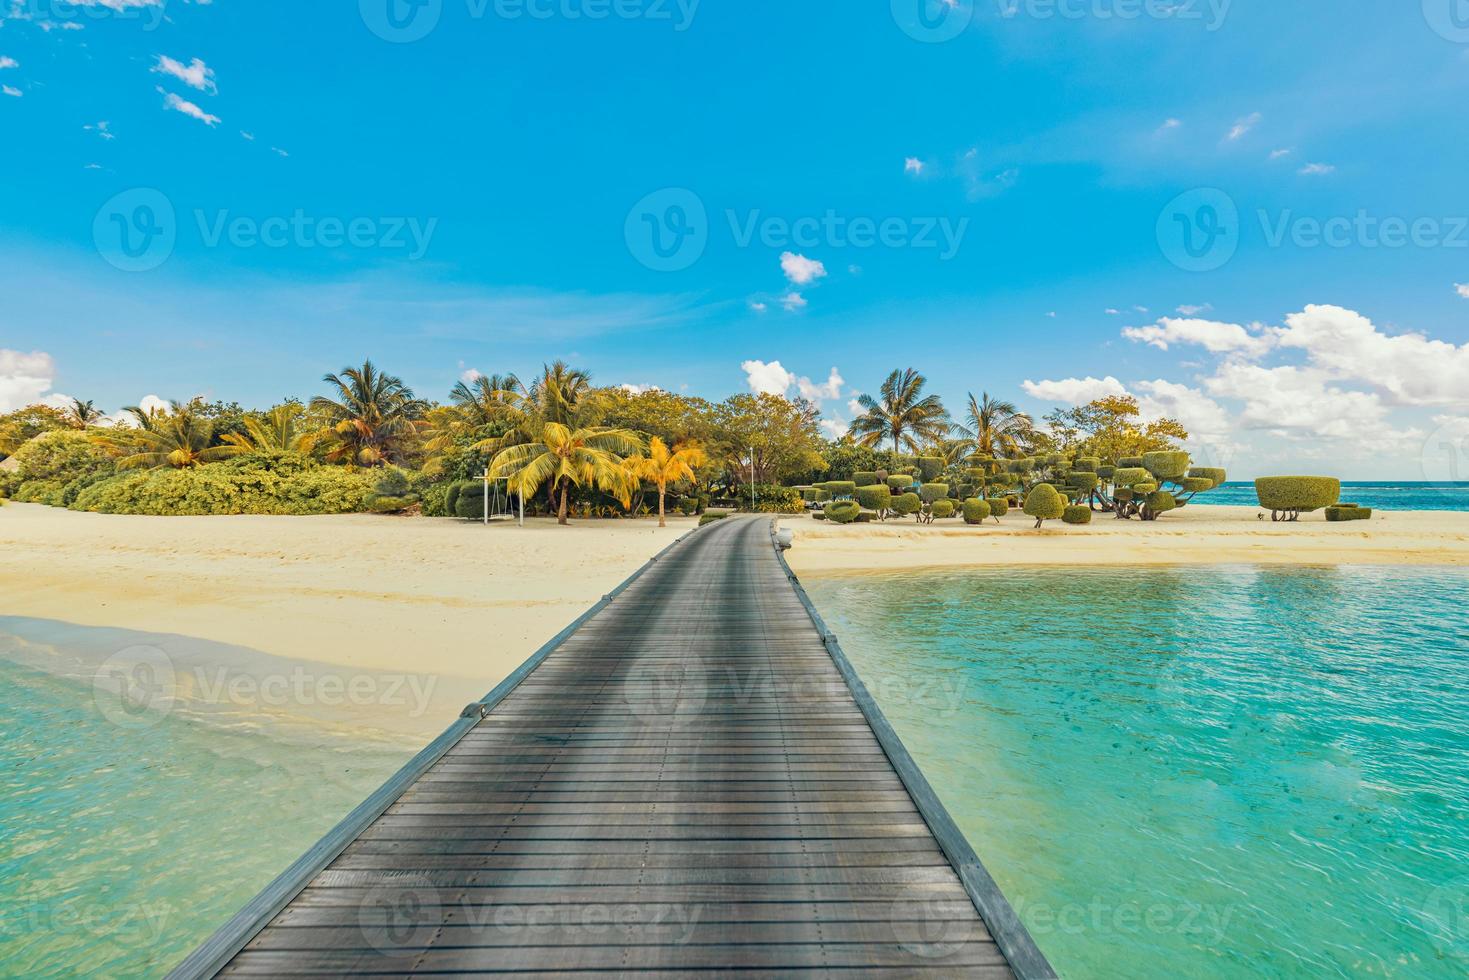 Fantastisk panorama på maldiverna. lyx tillflykt villor pir marinmålning med handflatan träd, vit sand och blå himmel. skön sommar landskap. tropisk strand bakgrund för semester Semester. paradis ö foto